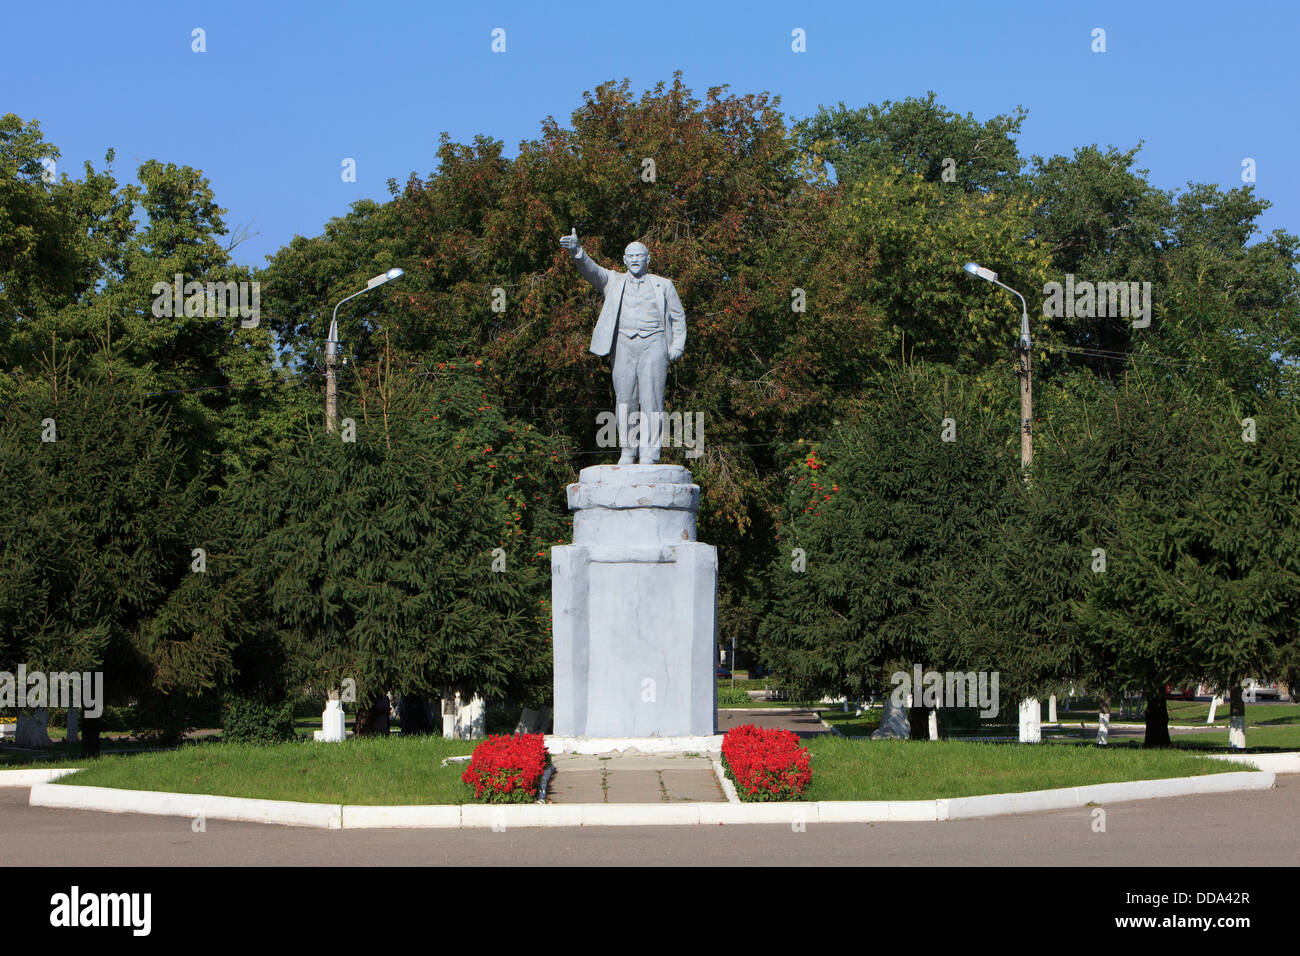 Statua del russo rivoluzionario comunista e uomo politico Vladimir Ilyich Lenin (1870-1924) in Kolomna, Russia Foto Stock